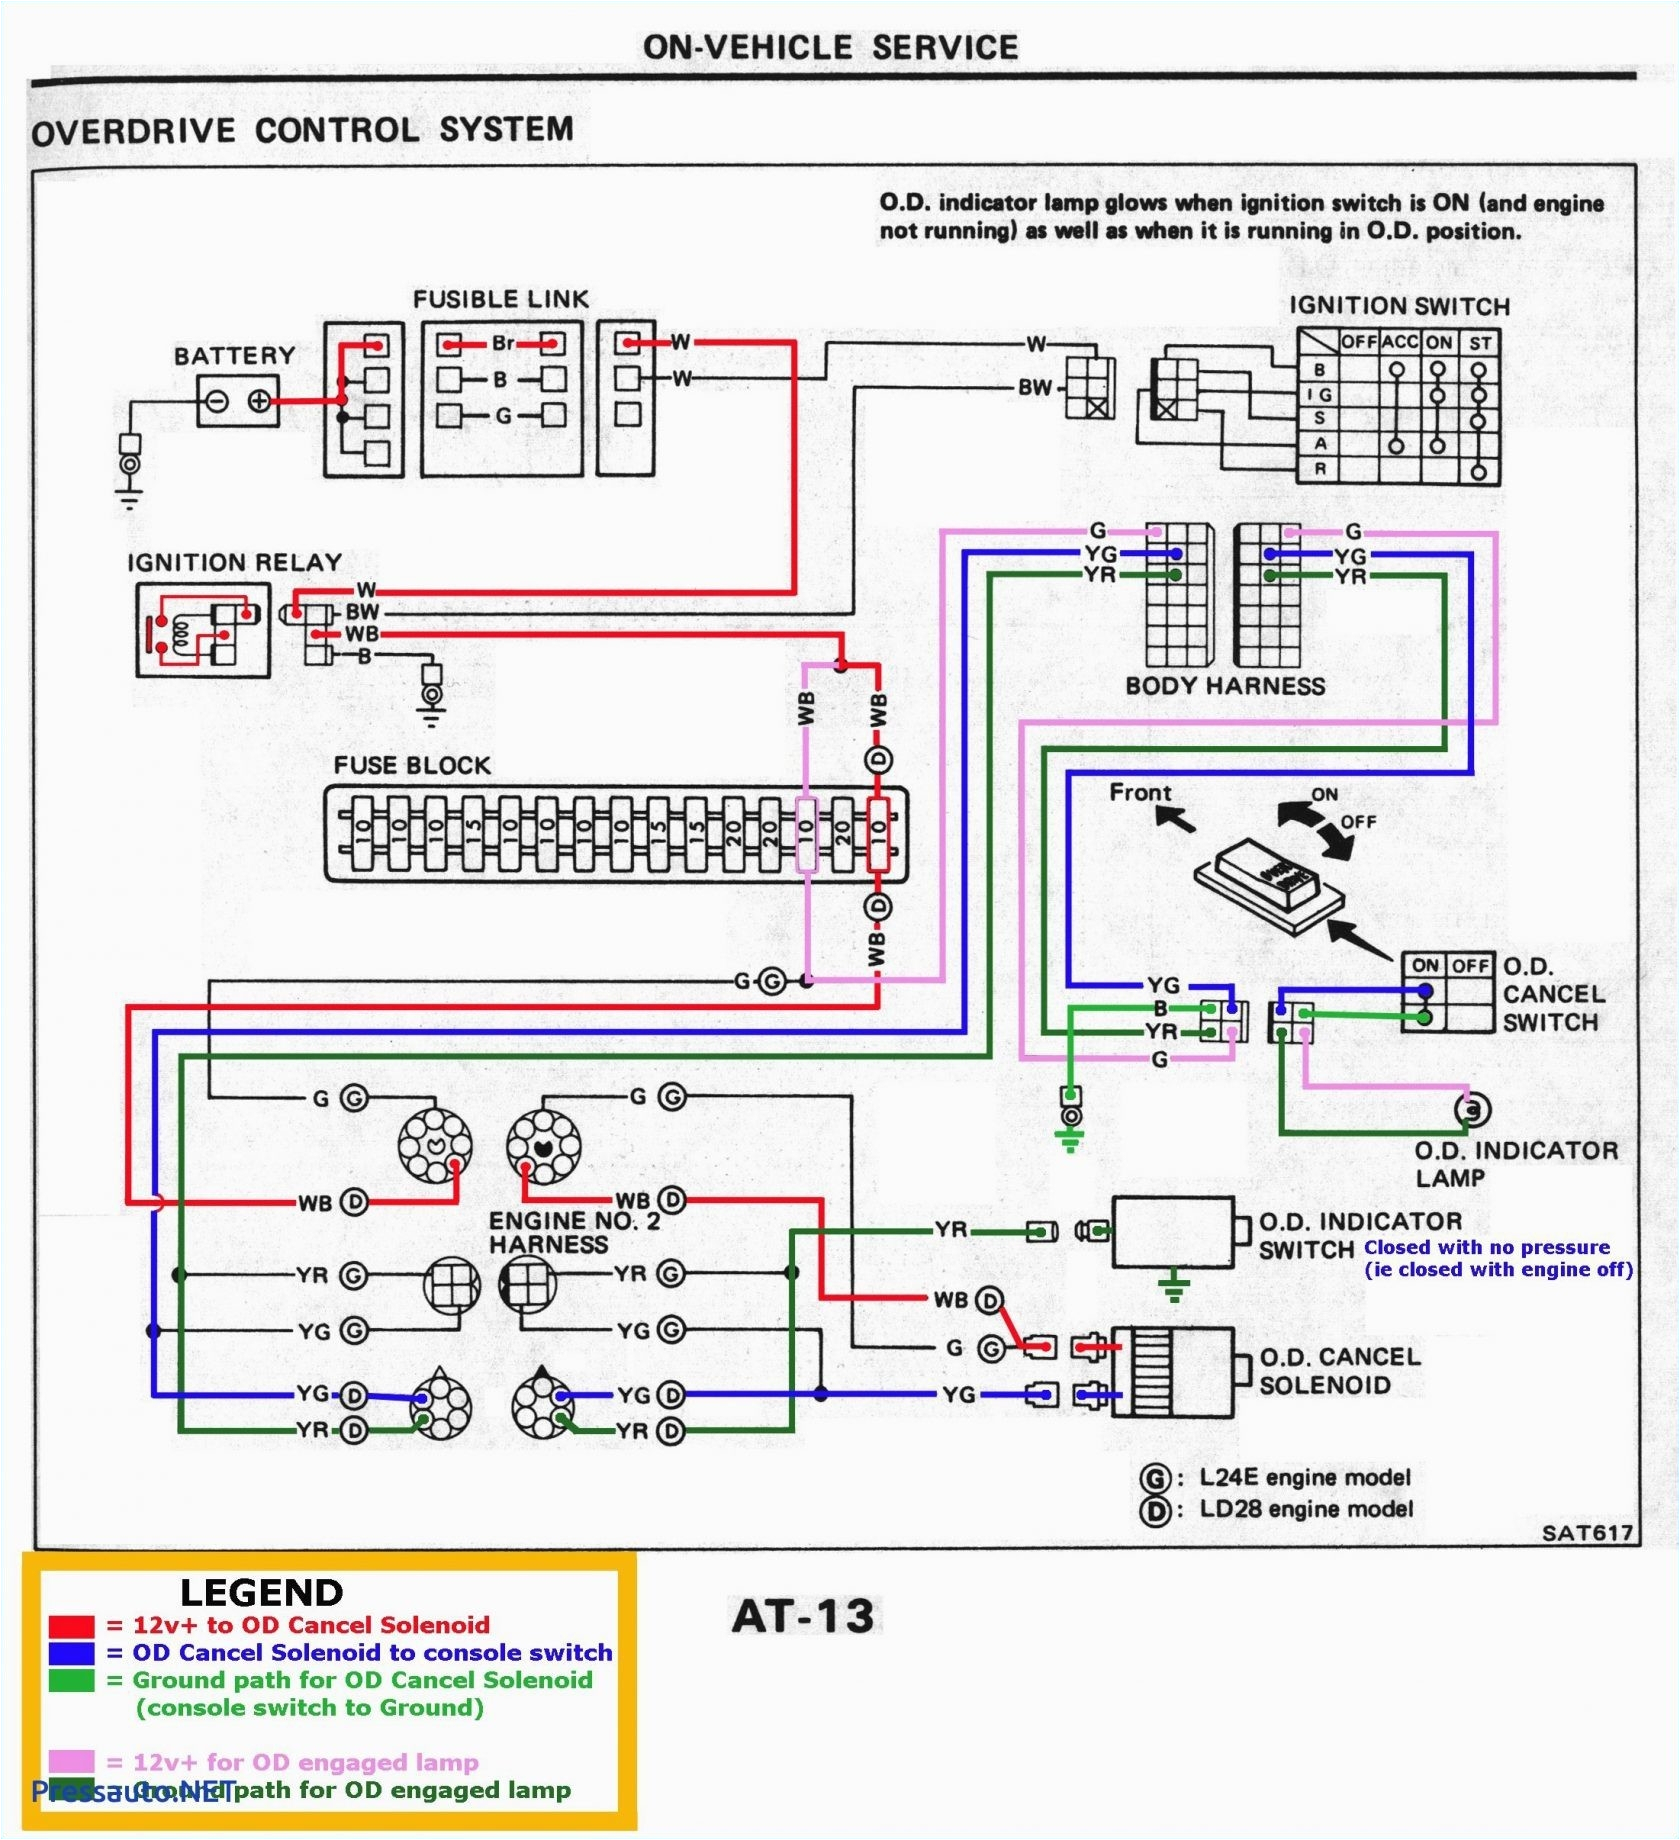 Teejet 744a 3 Wiring Diagram Teejet 744a 3 Wiring Diagram Free Wiring Diagram